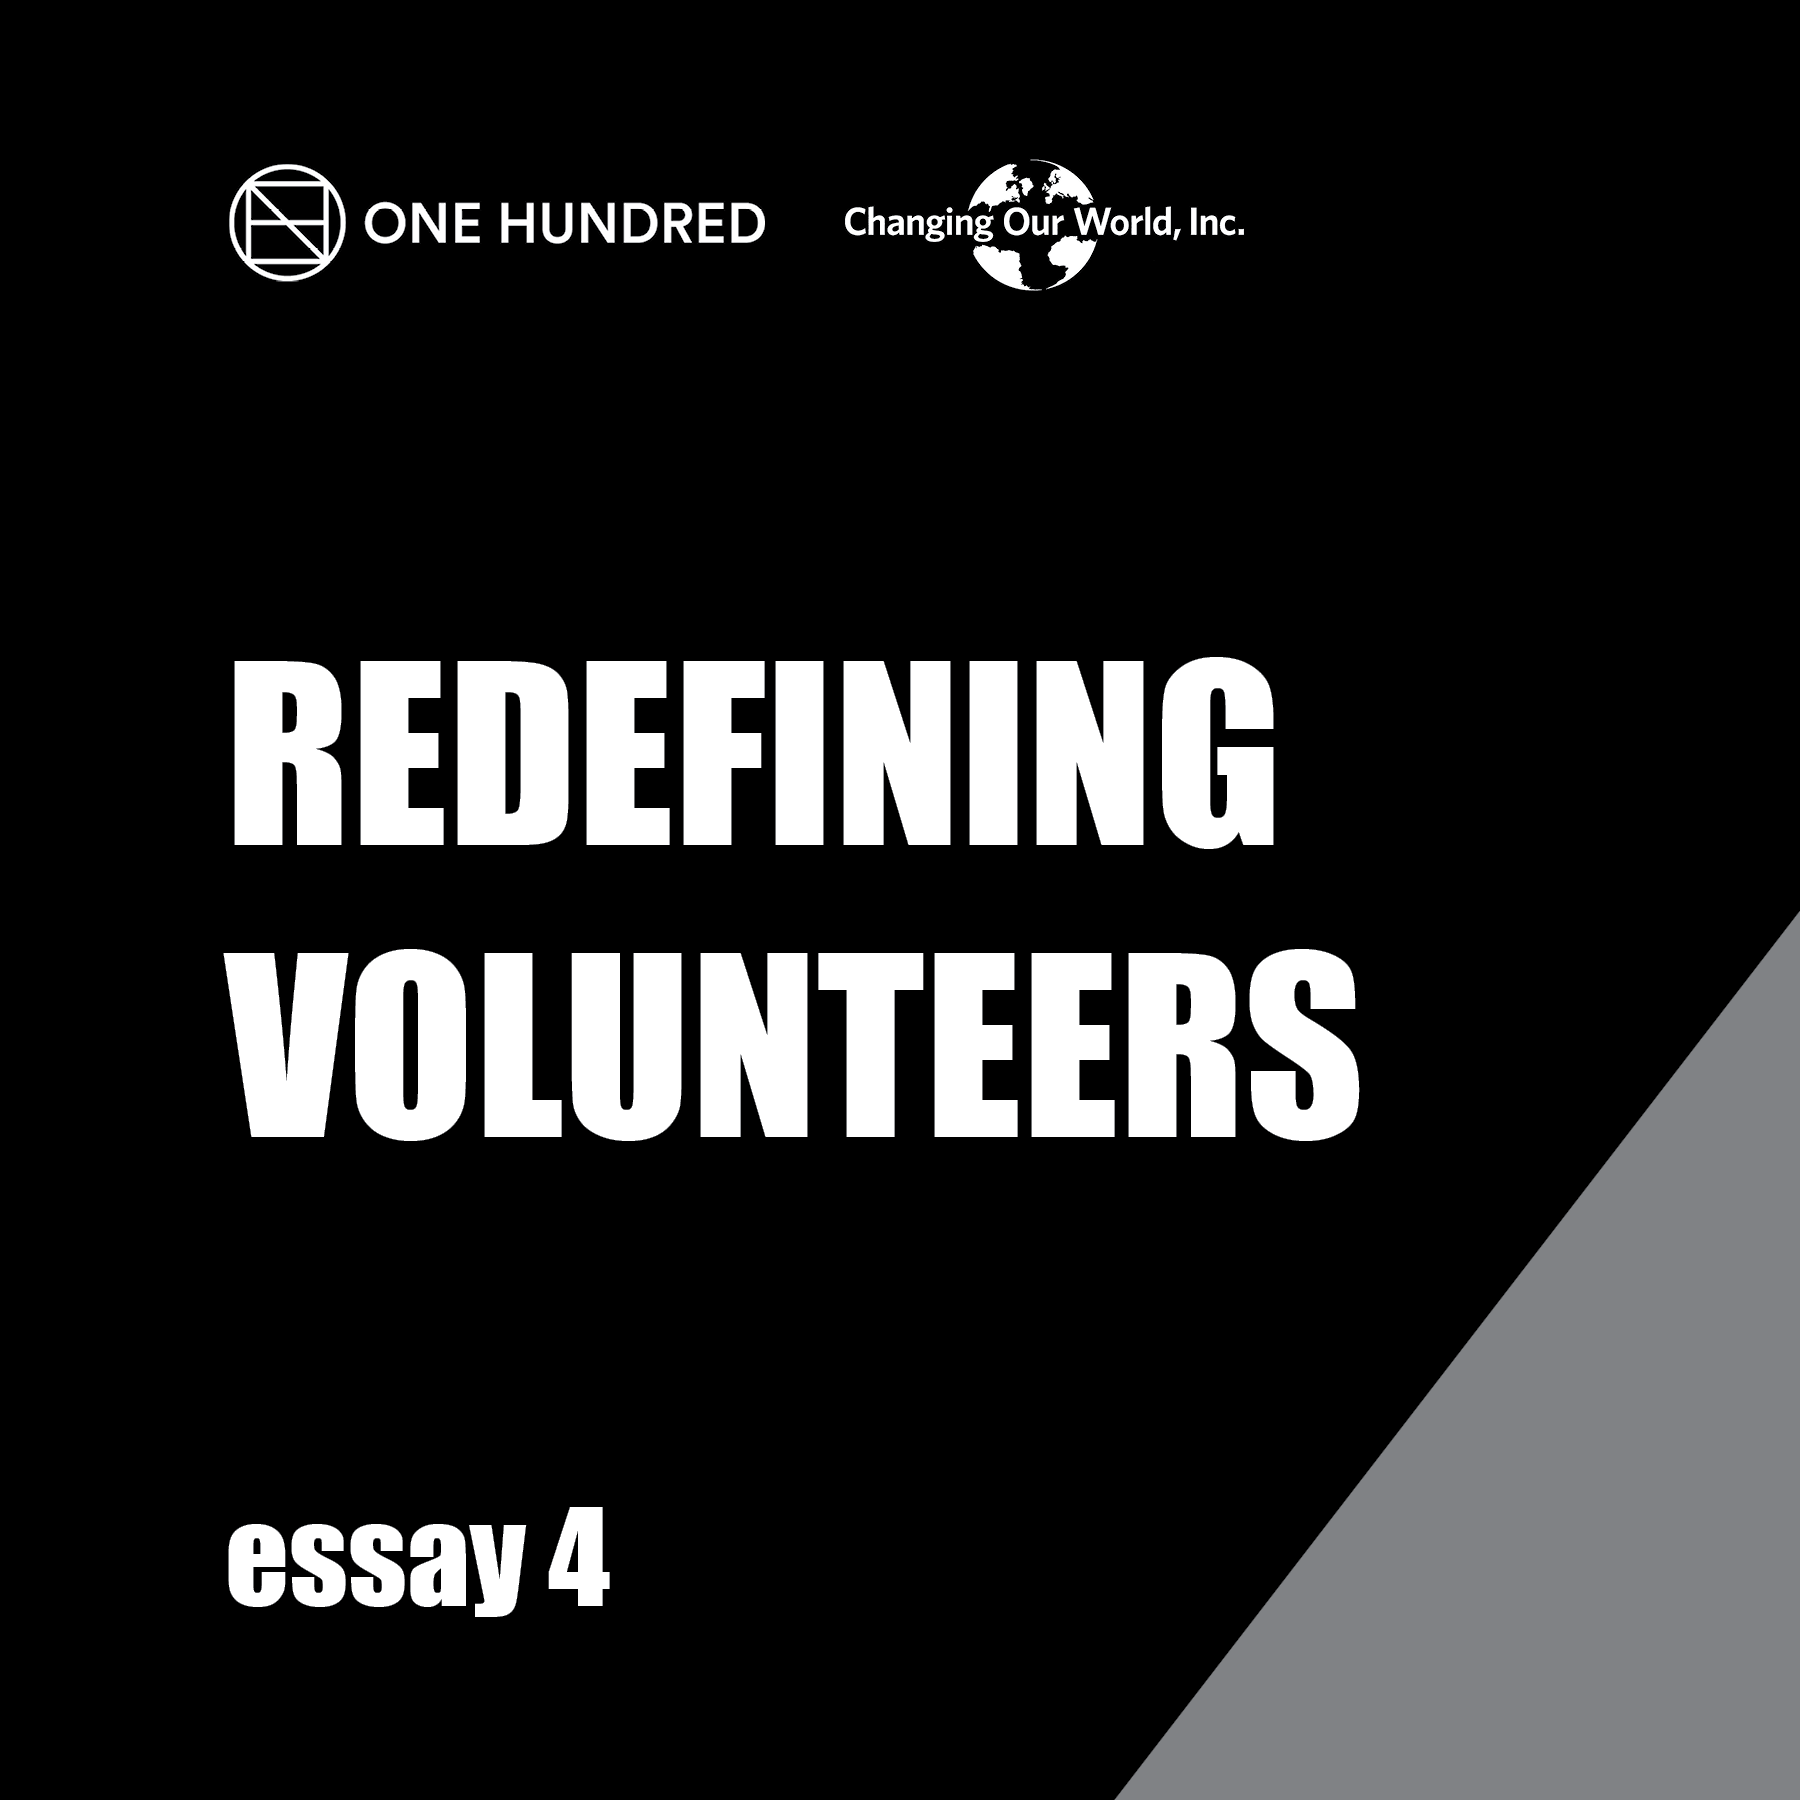 One hundred redeeming volunteers essay 4.